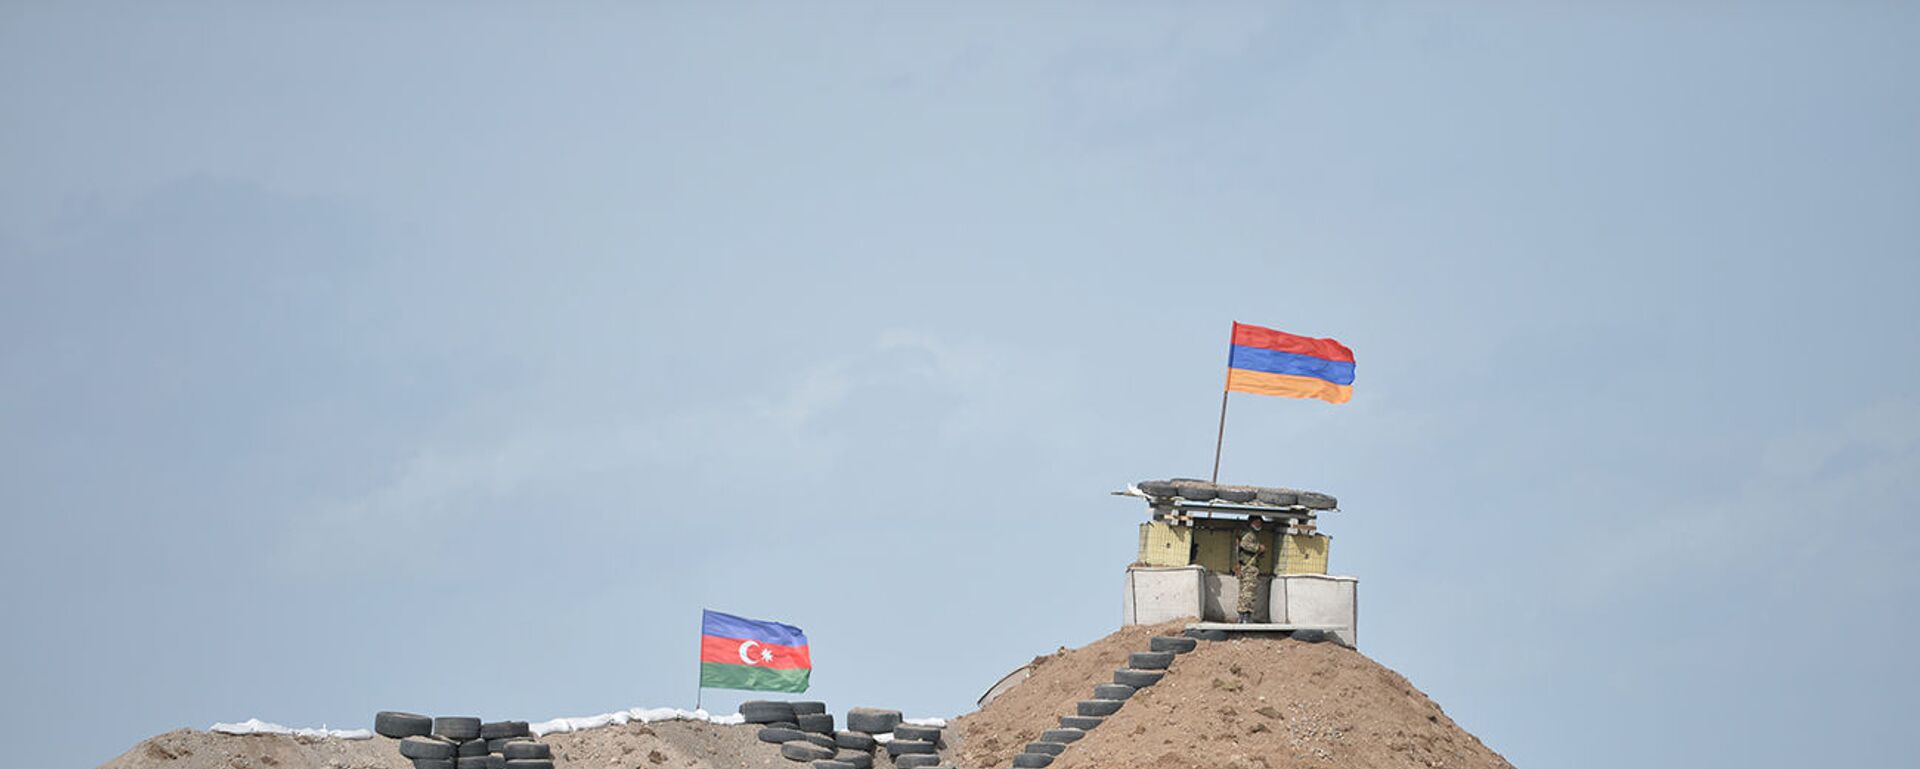 Военные посты на армянсо-азербайджанской границе - Sputnik Արմենիա, 1920, 20.05.2021